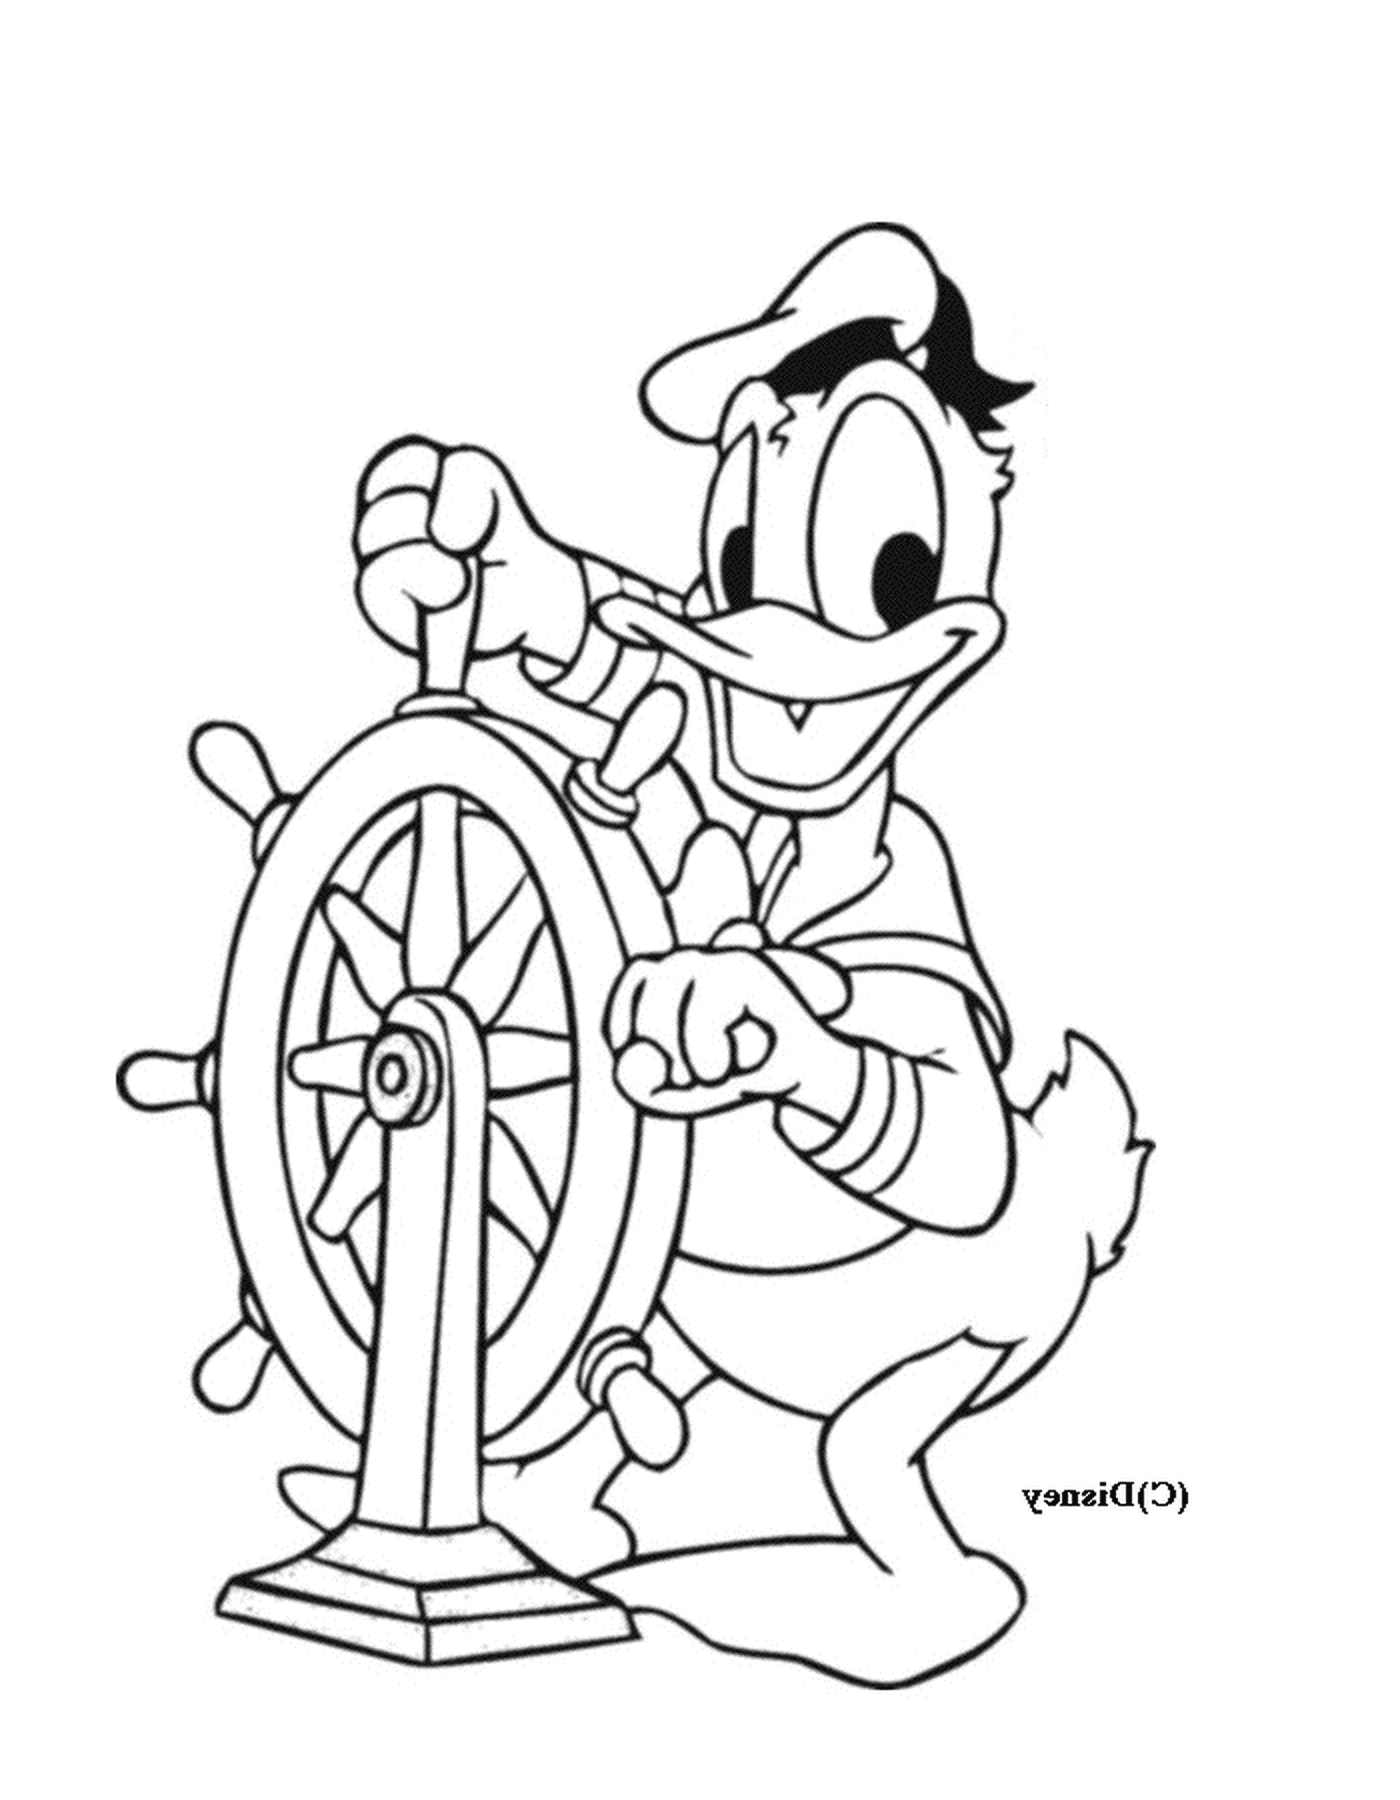  Donald navega con confianza 